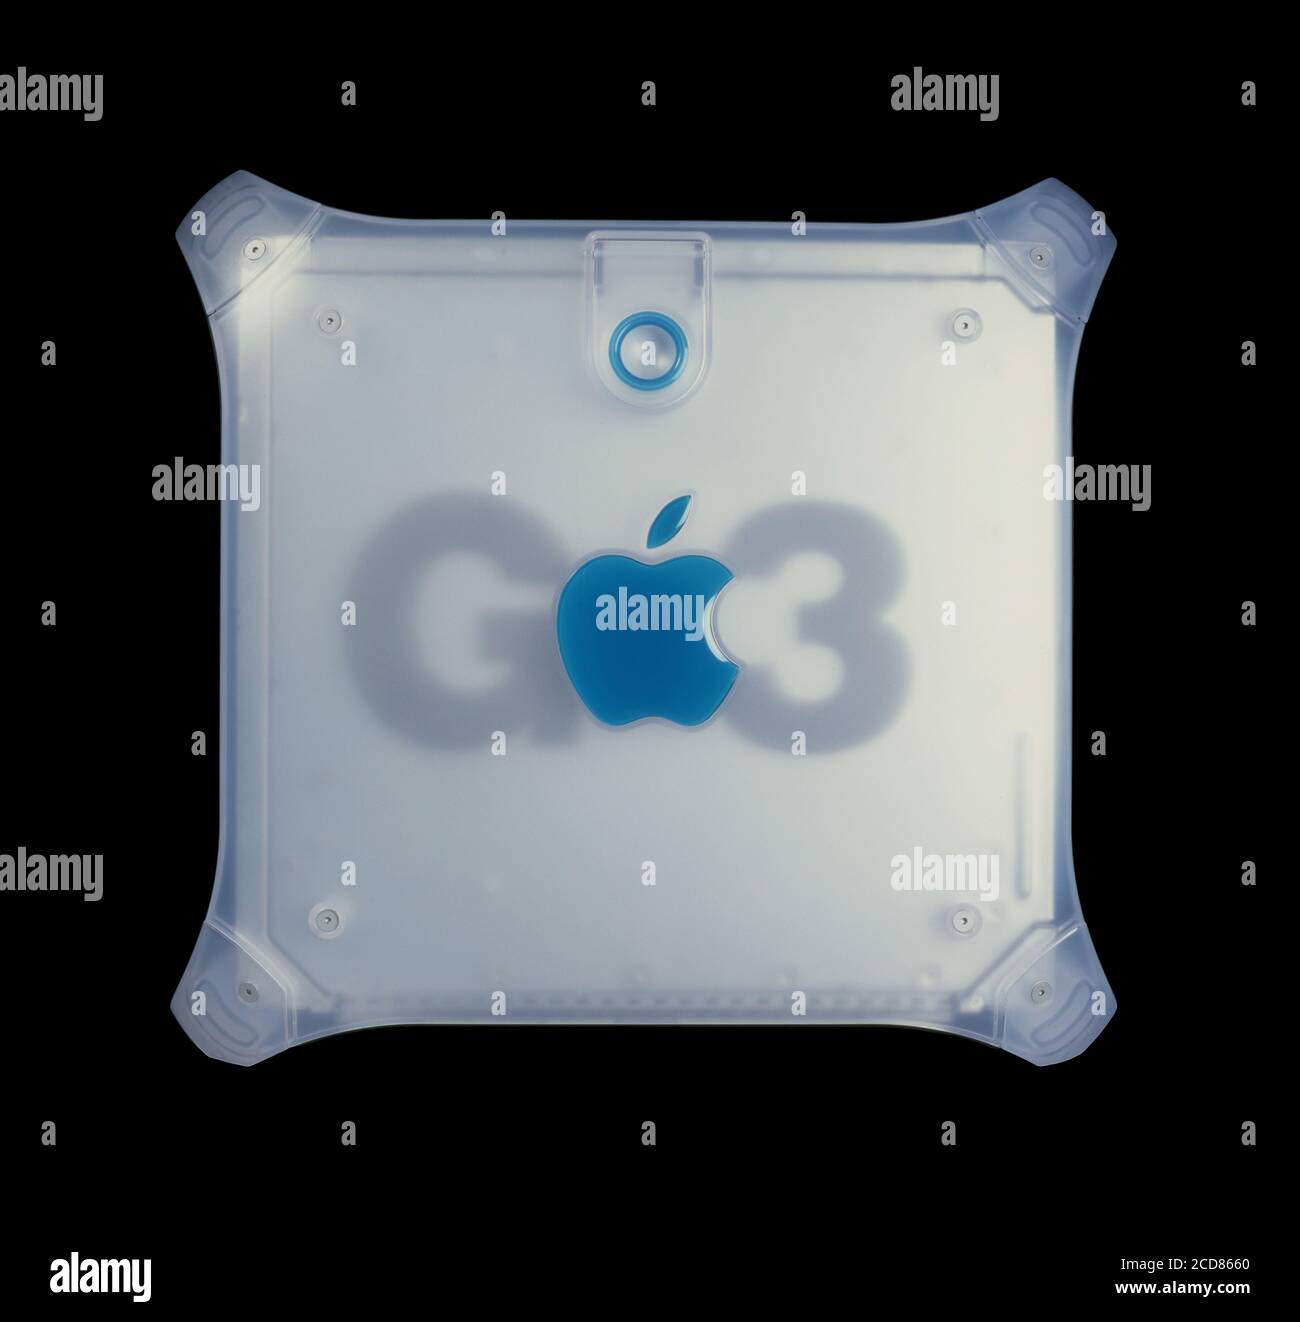 Processeur de l'ordinateur Apple G3. Boîtier en plastique bleu translucide d'un ordinateur Apple Macintosh Power Mac G3. Avec poignées de transport. Banque D'Images